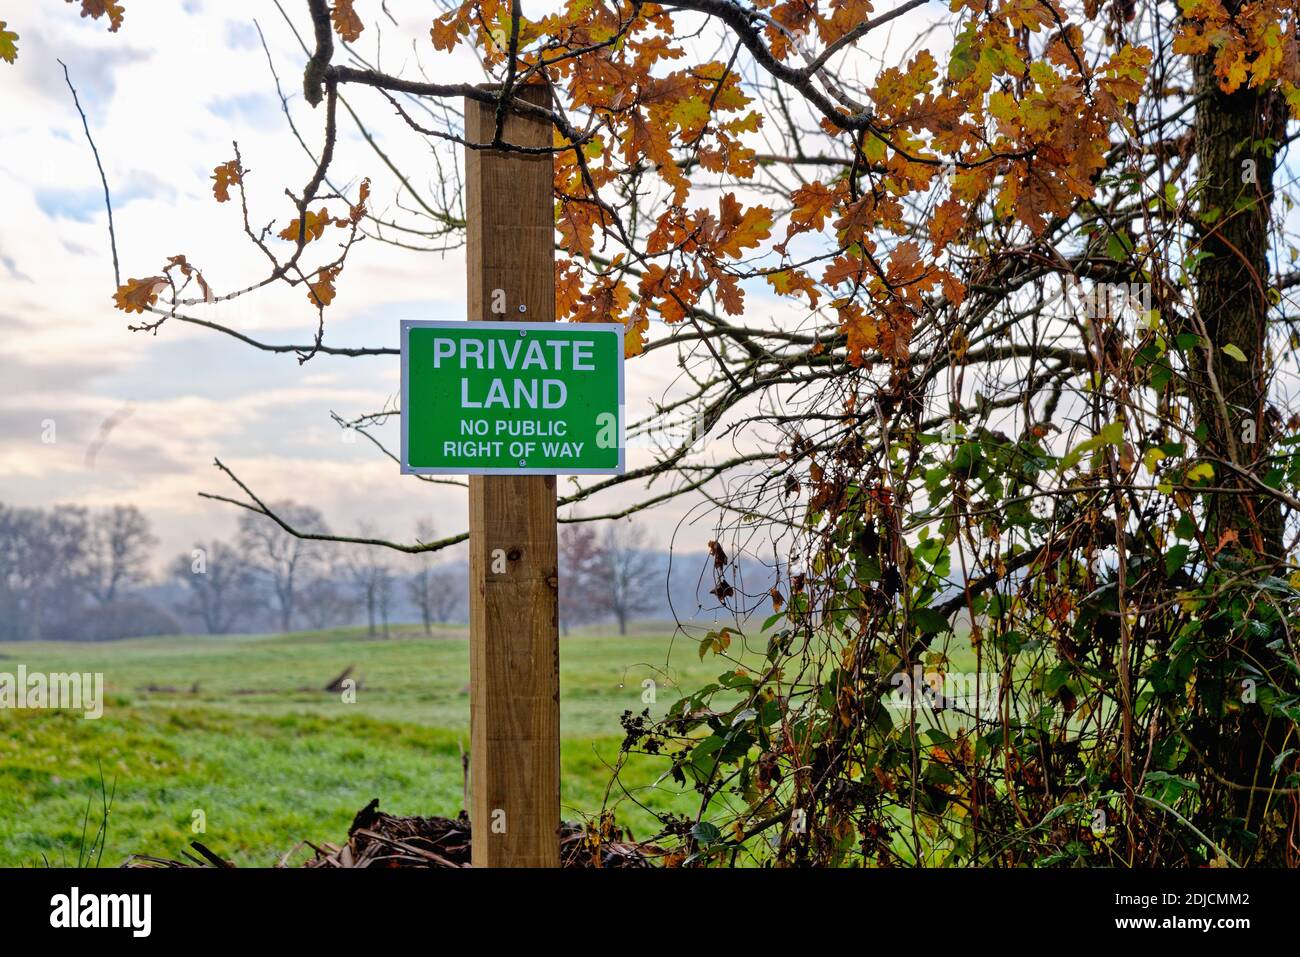 Panneau sur un poste à la campagne informant le public de « Private Land No public Right of Way », Byfleet Surrey Angleterre Royaume-Uni Banque D'Images